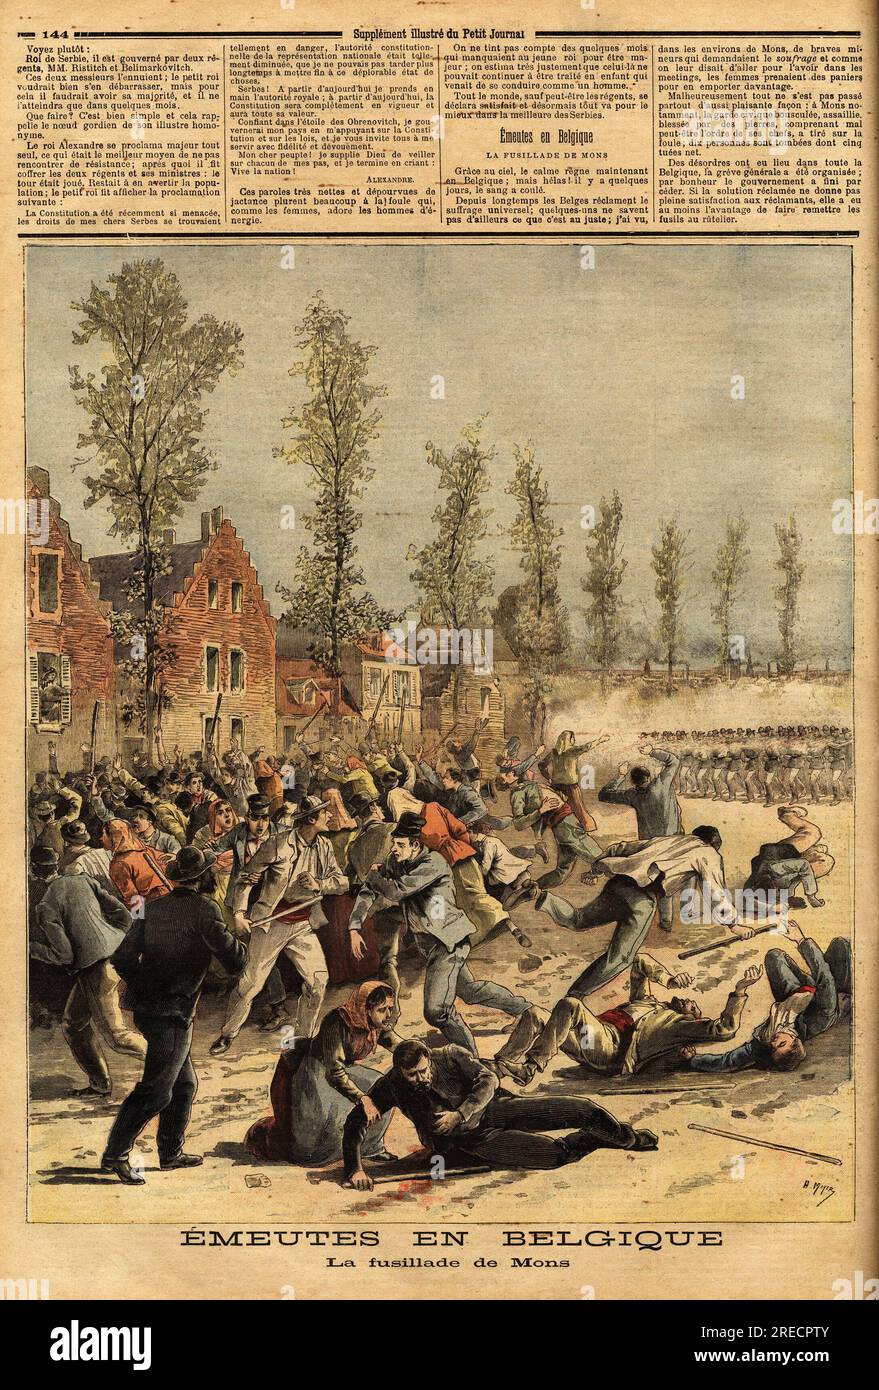 La Garde Civique Tire sur la foule en emeute, Reclamant le Suffrage Univerel, A Mons, Belgique. Gravure in "Le Petit Journal" 6041893. Stockfoto